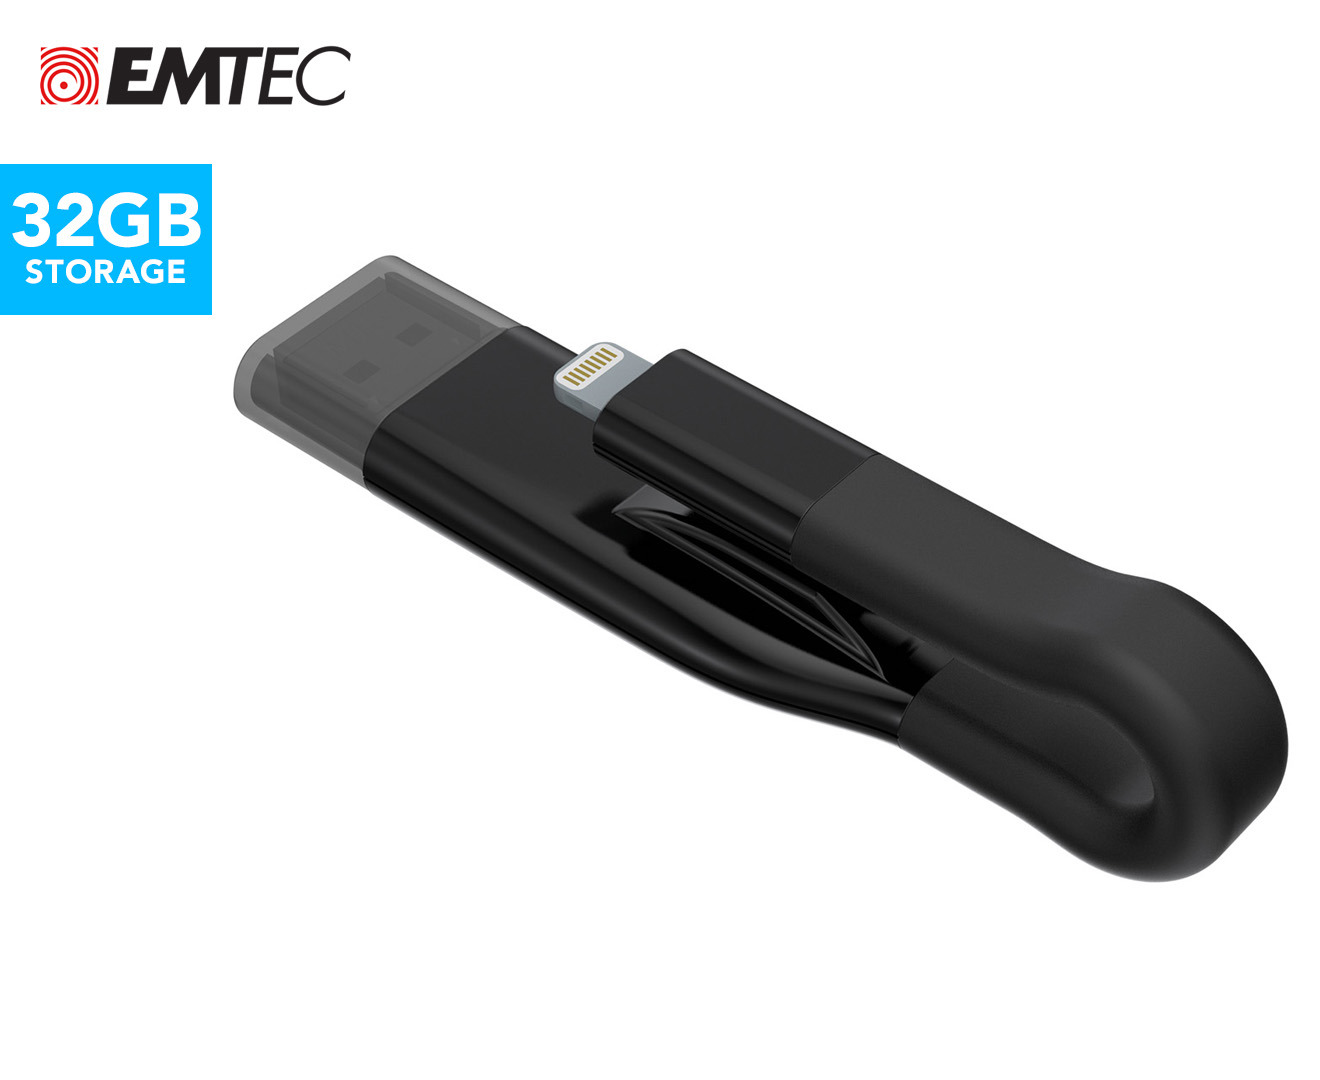 EMTEC iCobra2 2-in-1 USB 3.0 & Lightning 32GB Flash Drive